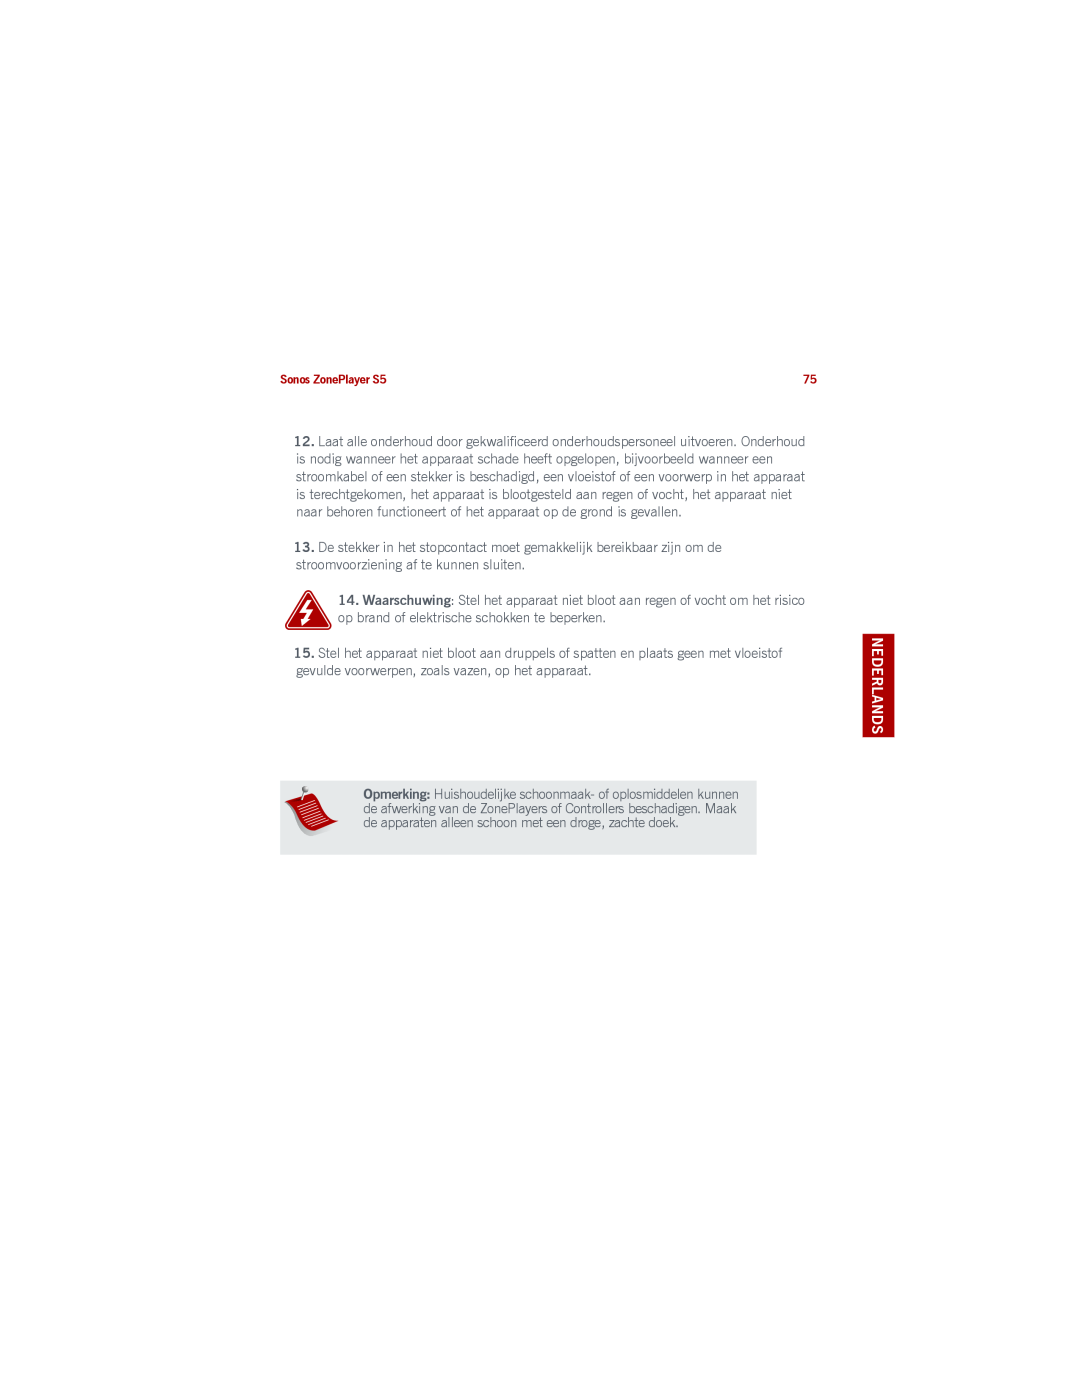 Sonos S5 manual op brand of elektrische schokken te beperken, Nederlands Duits Nederlands Zweeds 